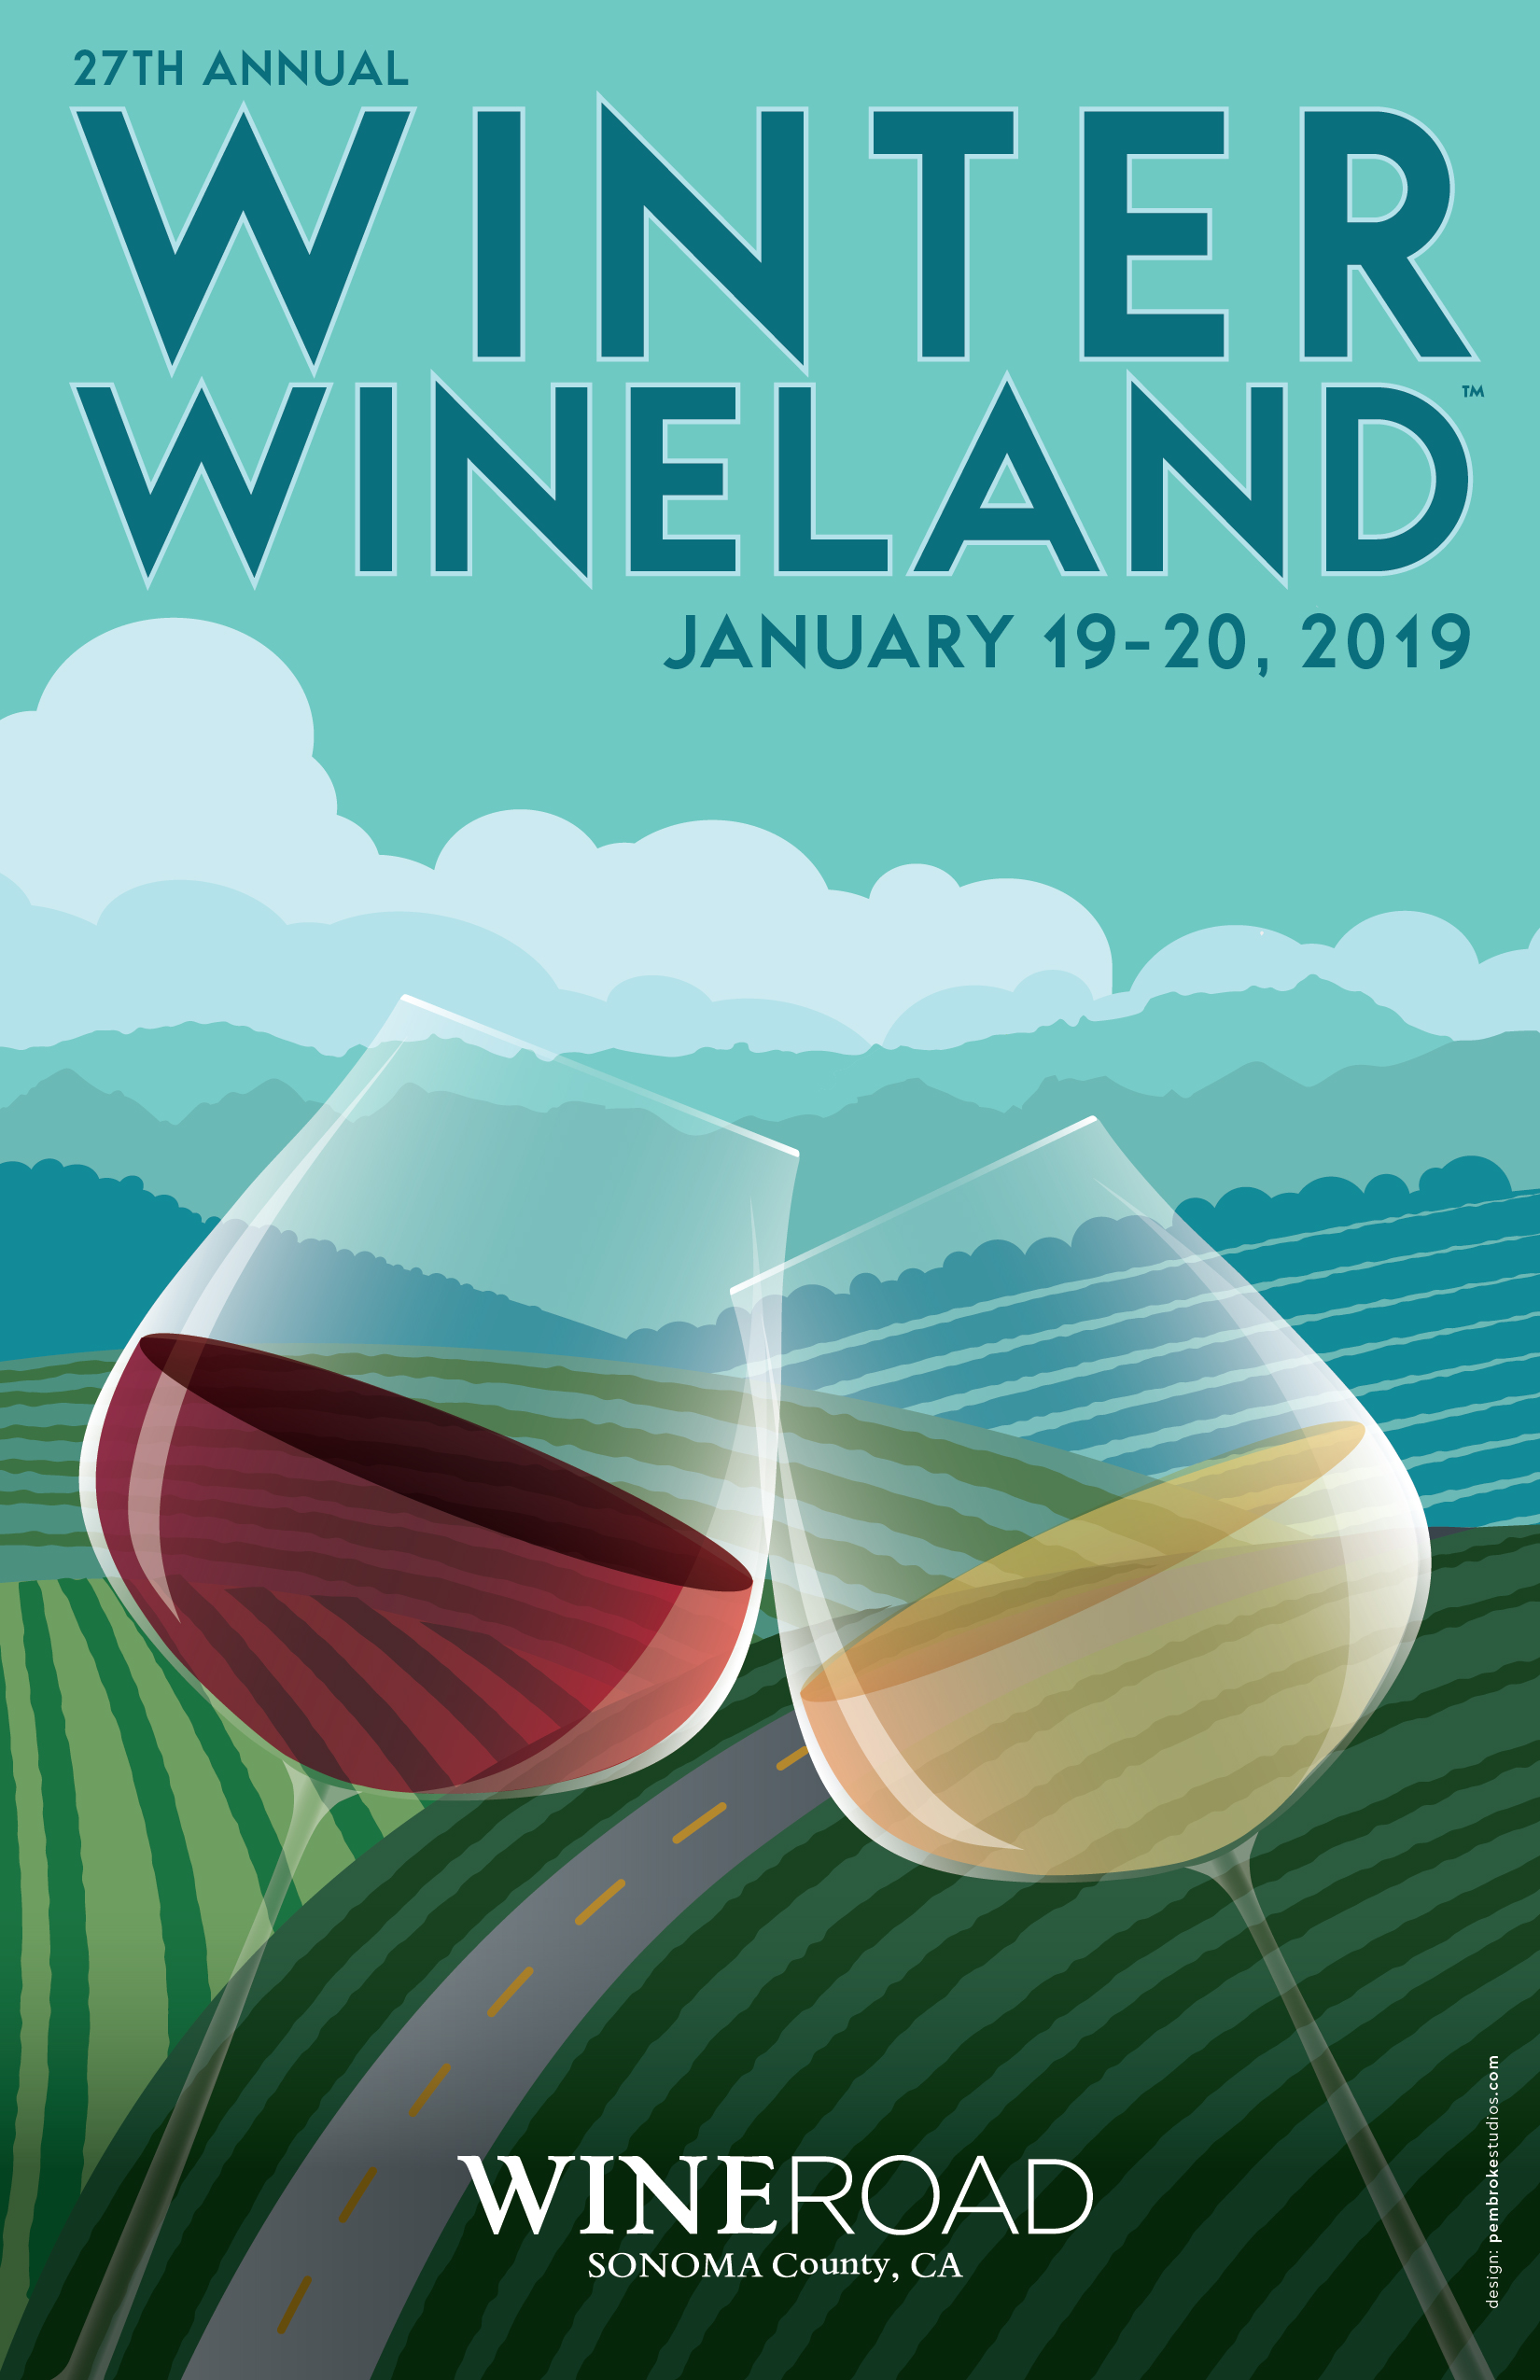 Winter WINEland Pezzi King Winery